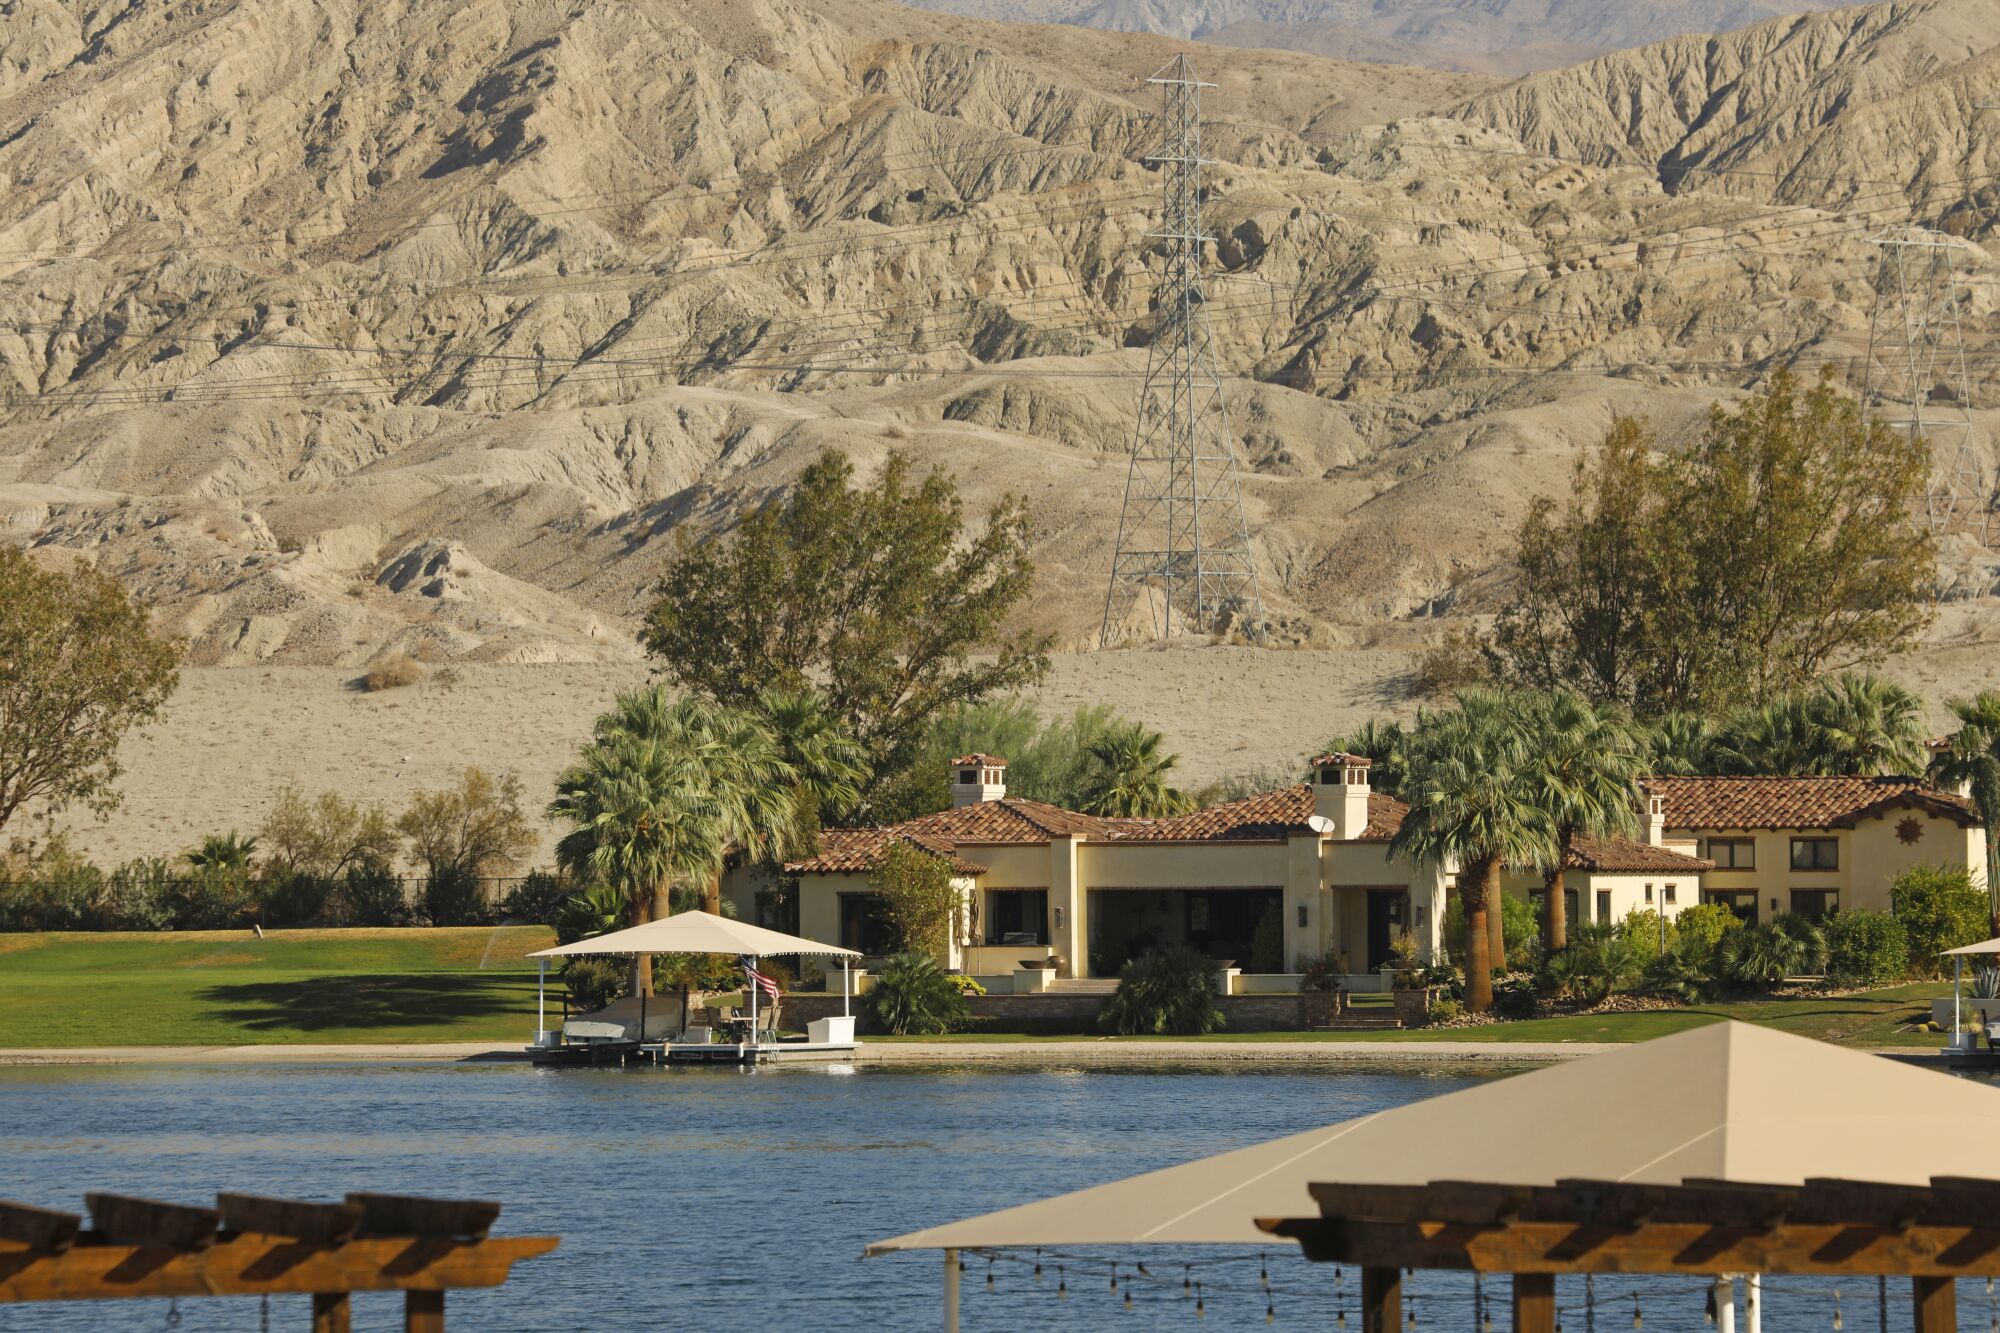 Casas junto a un lago artificial junto a las montañas del desierto.